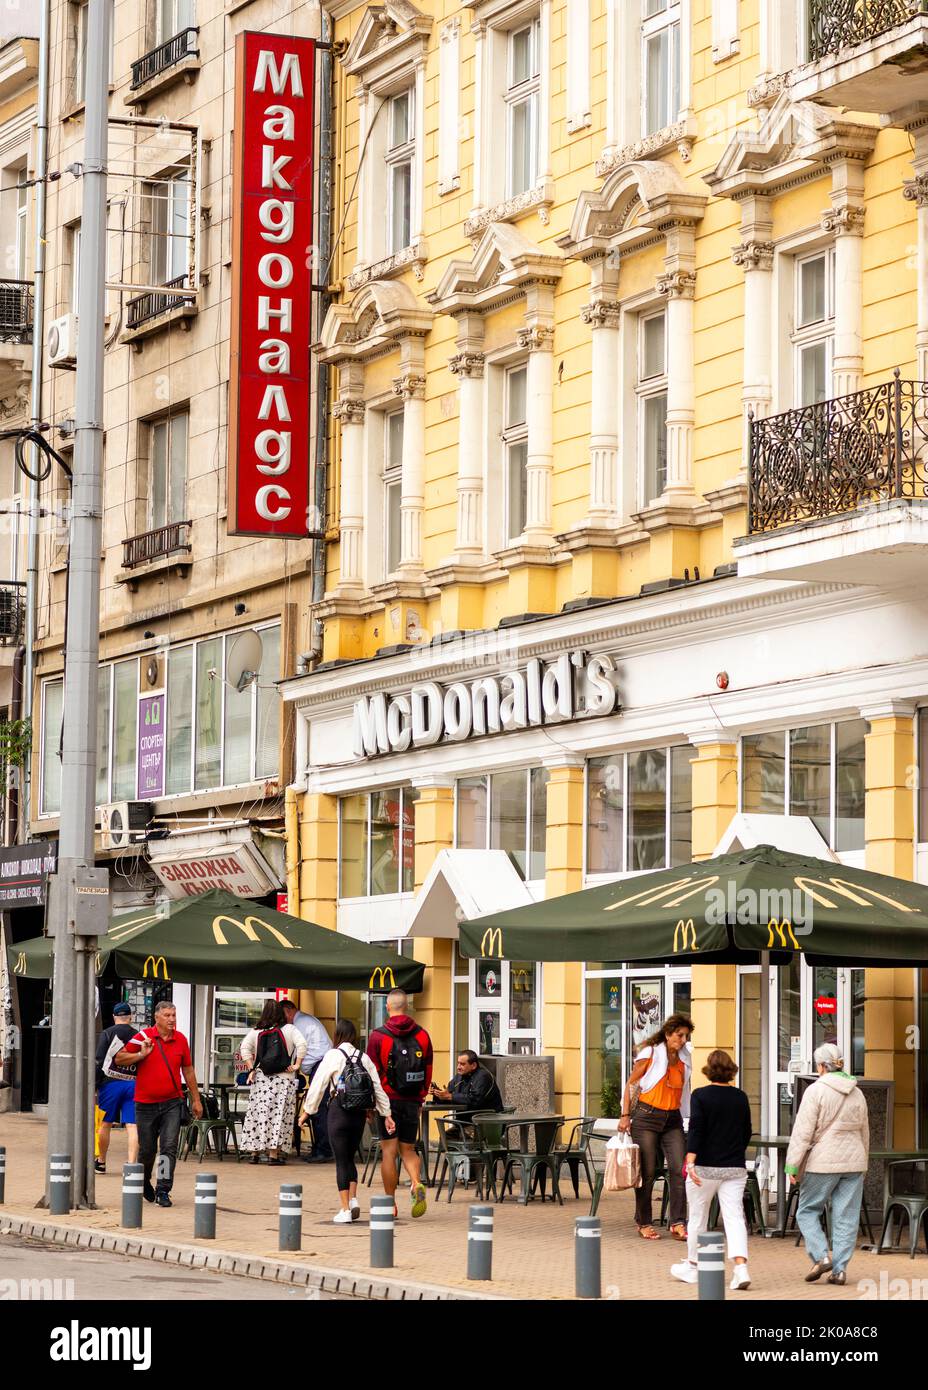 McDonald's fast food restaurant signe en langue slave à Sofia, Bulgarie, Europe de l'est, Balkans, UE Banque D'Images